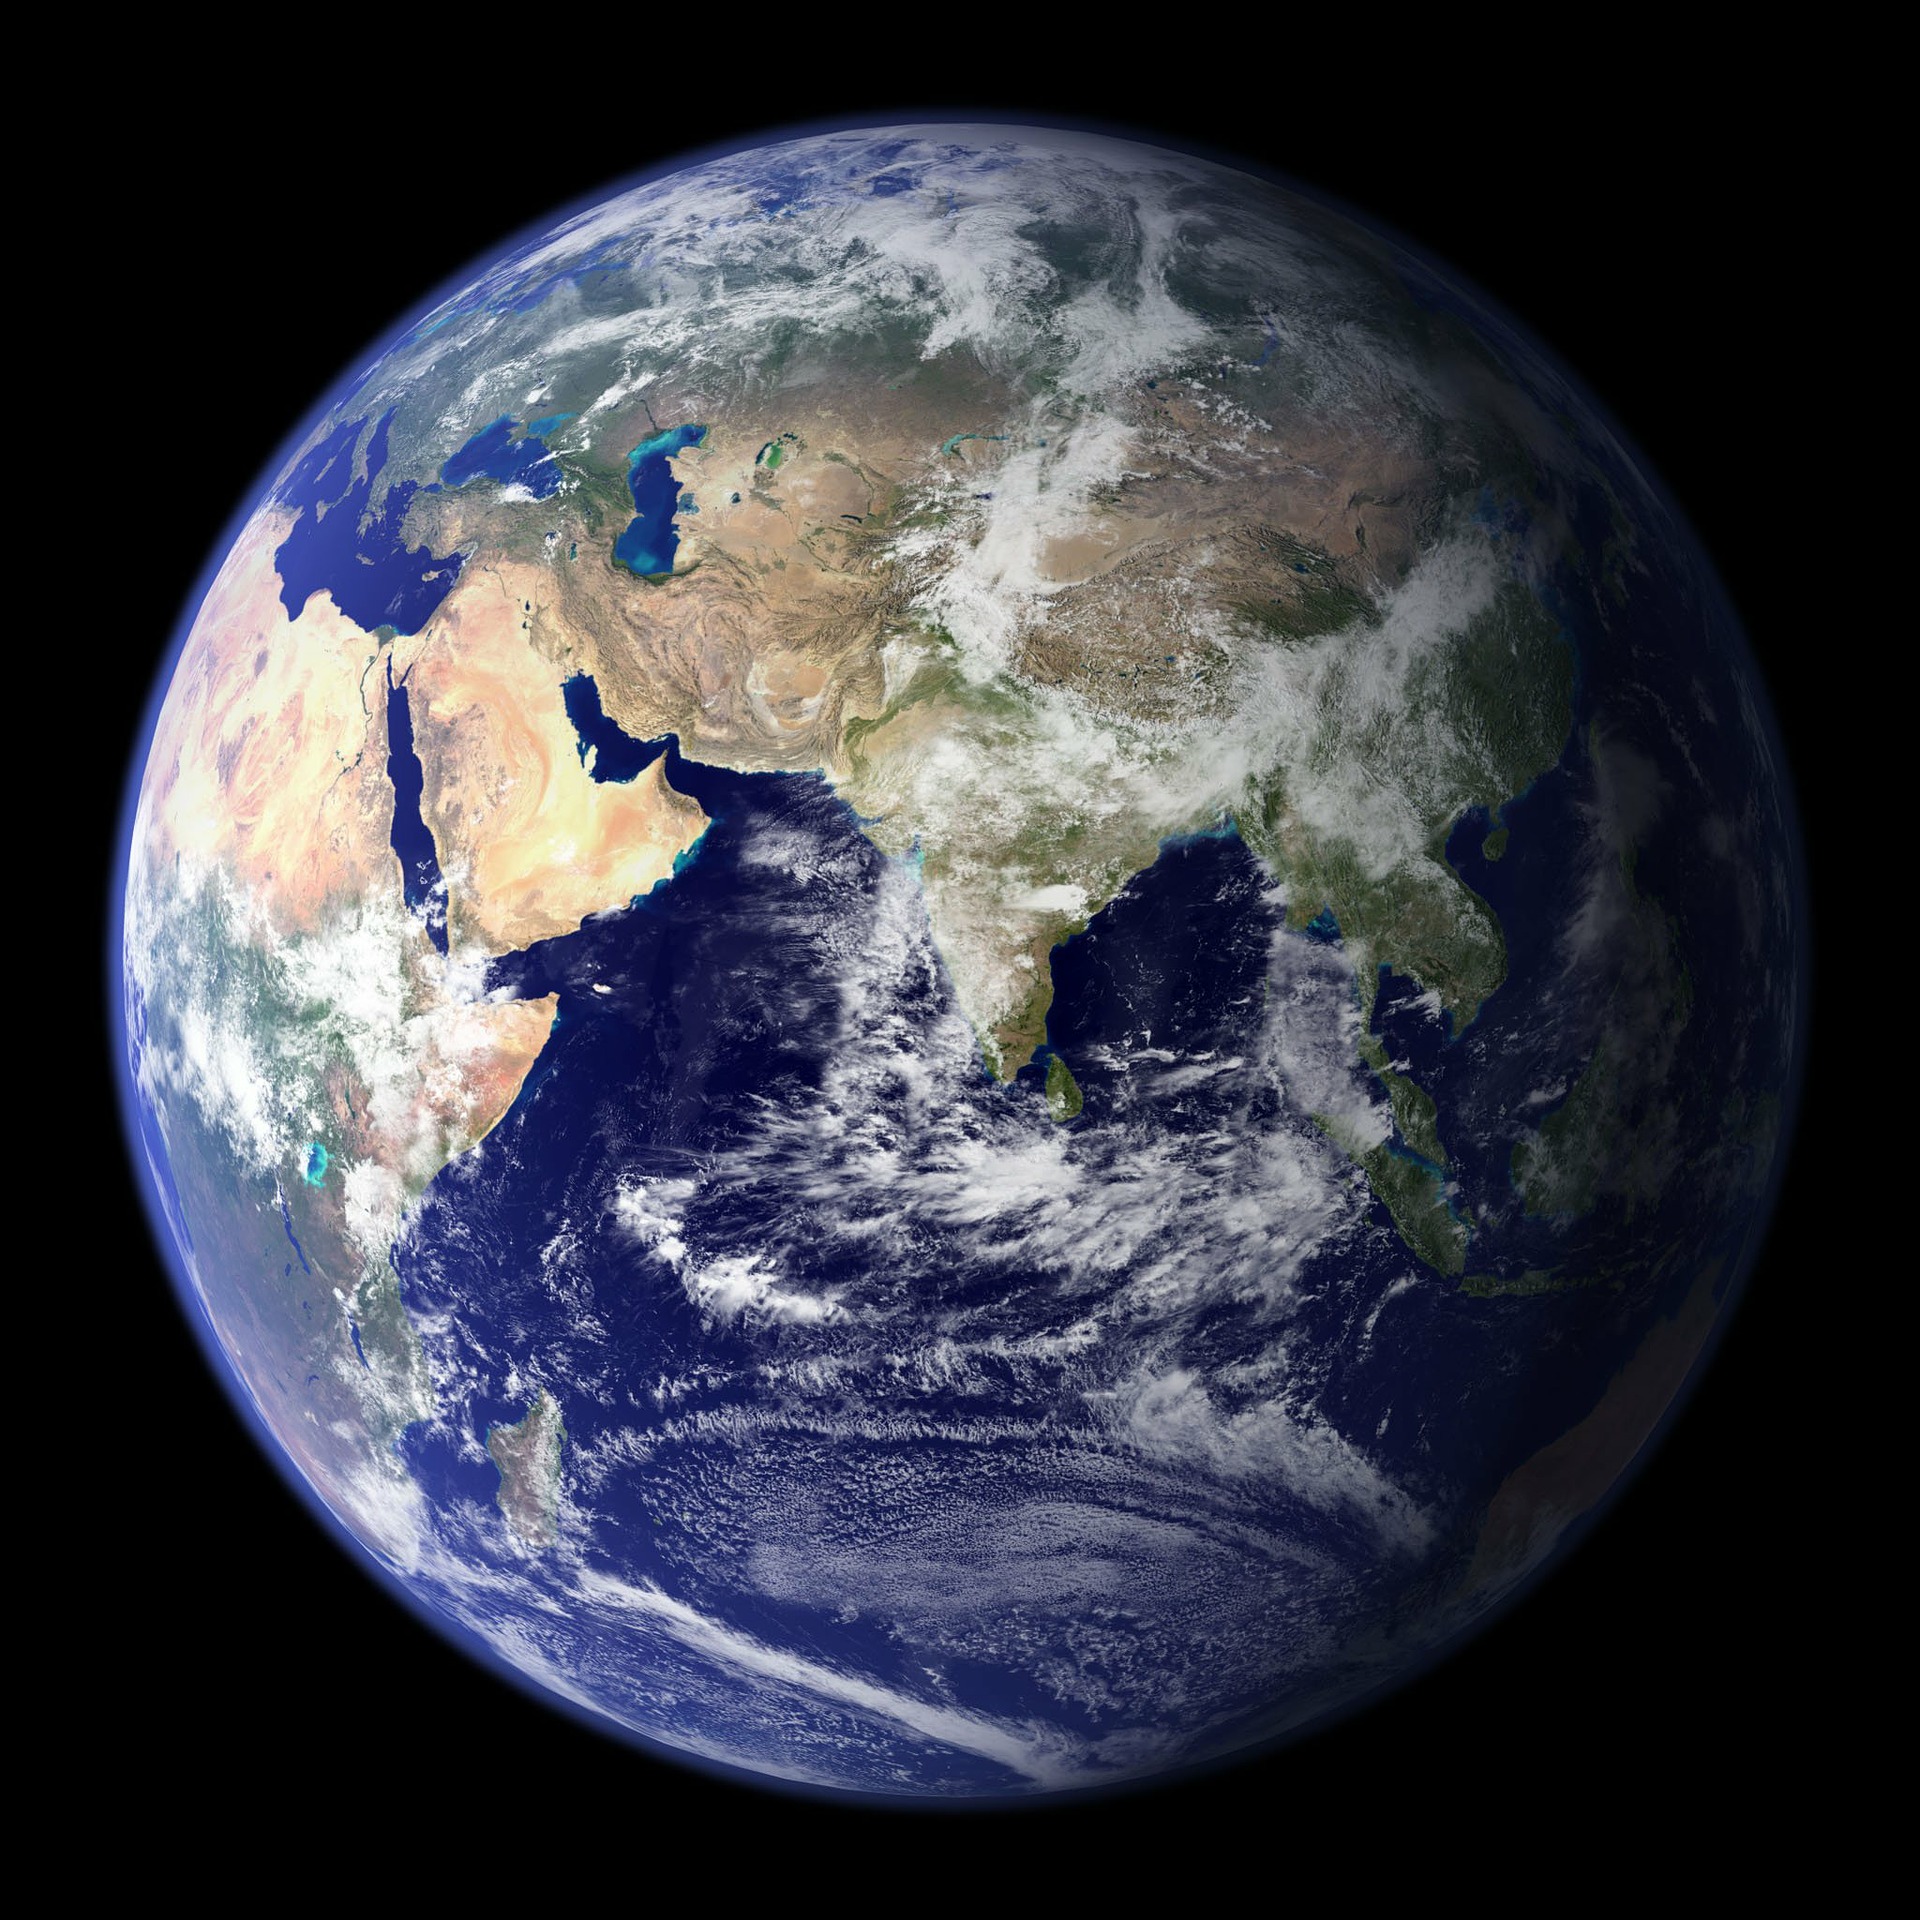 httpspixabay.comesphotosla-tierra-planeta-espacio-mundo-11008.jpg